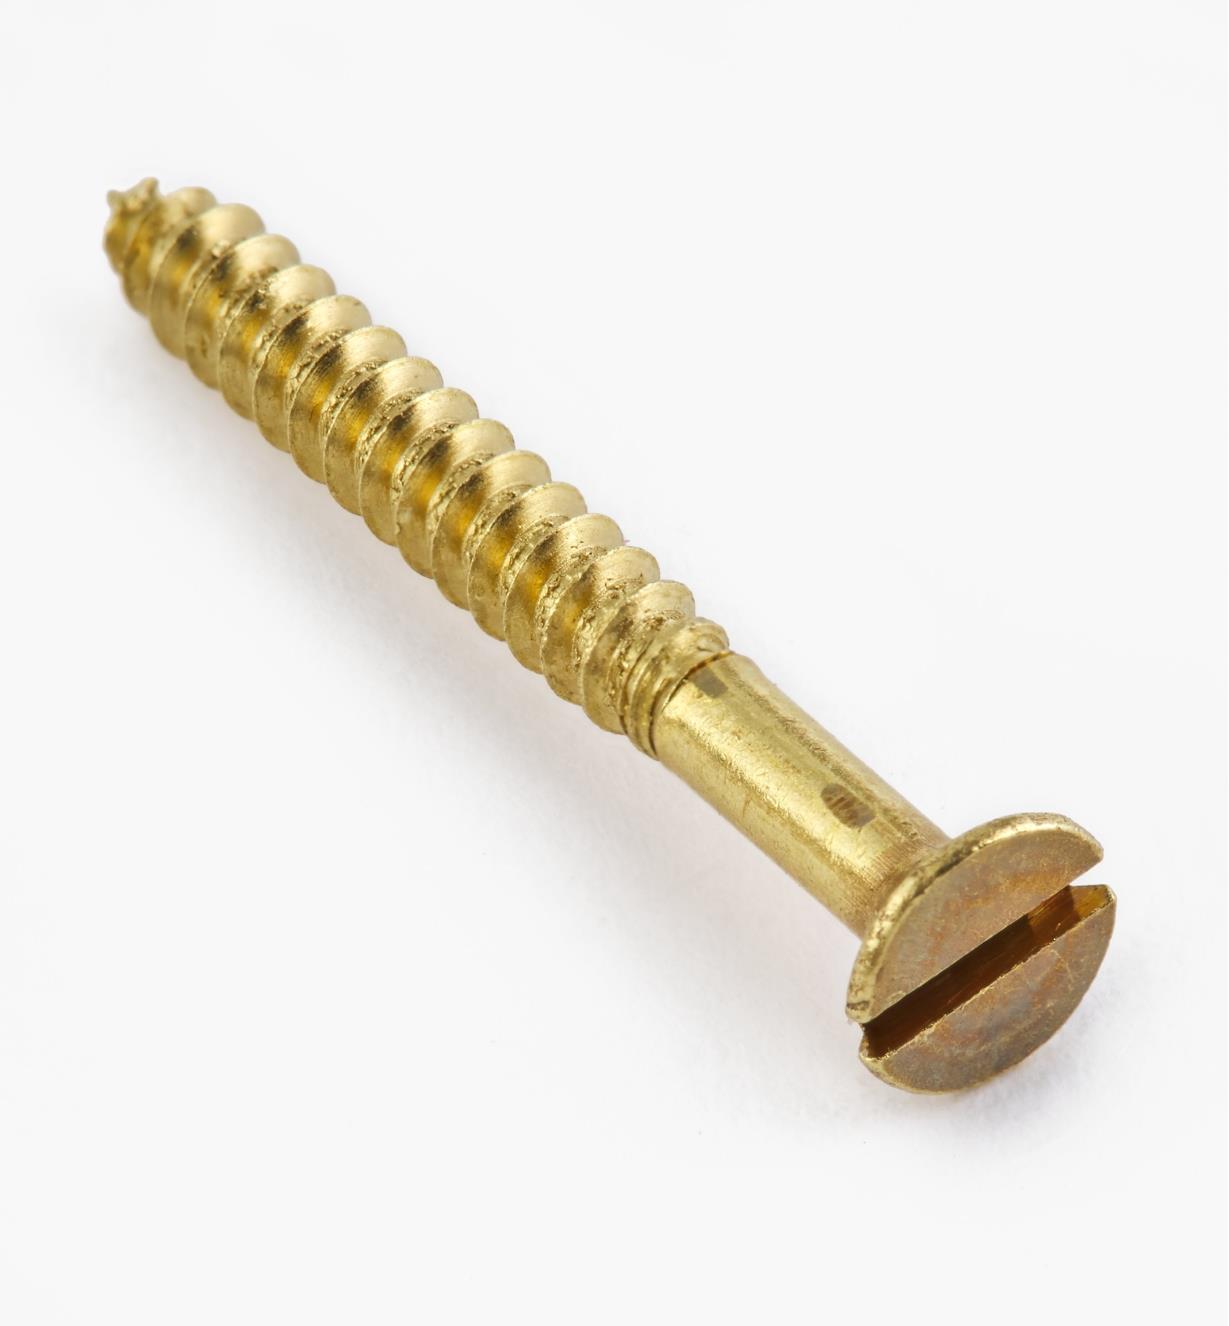 1" #4 Flat-Head Brass Screws